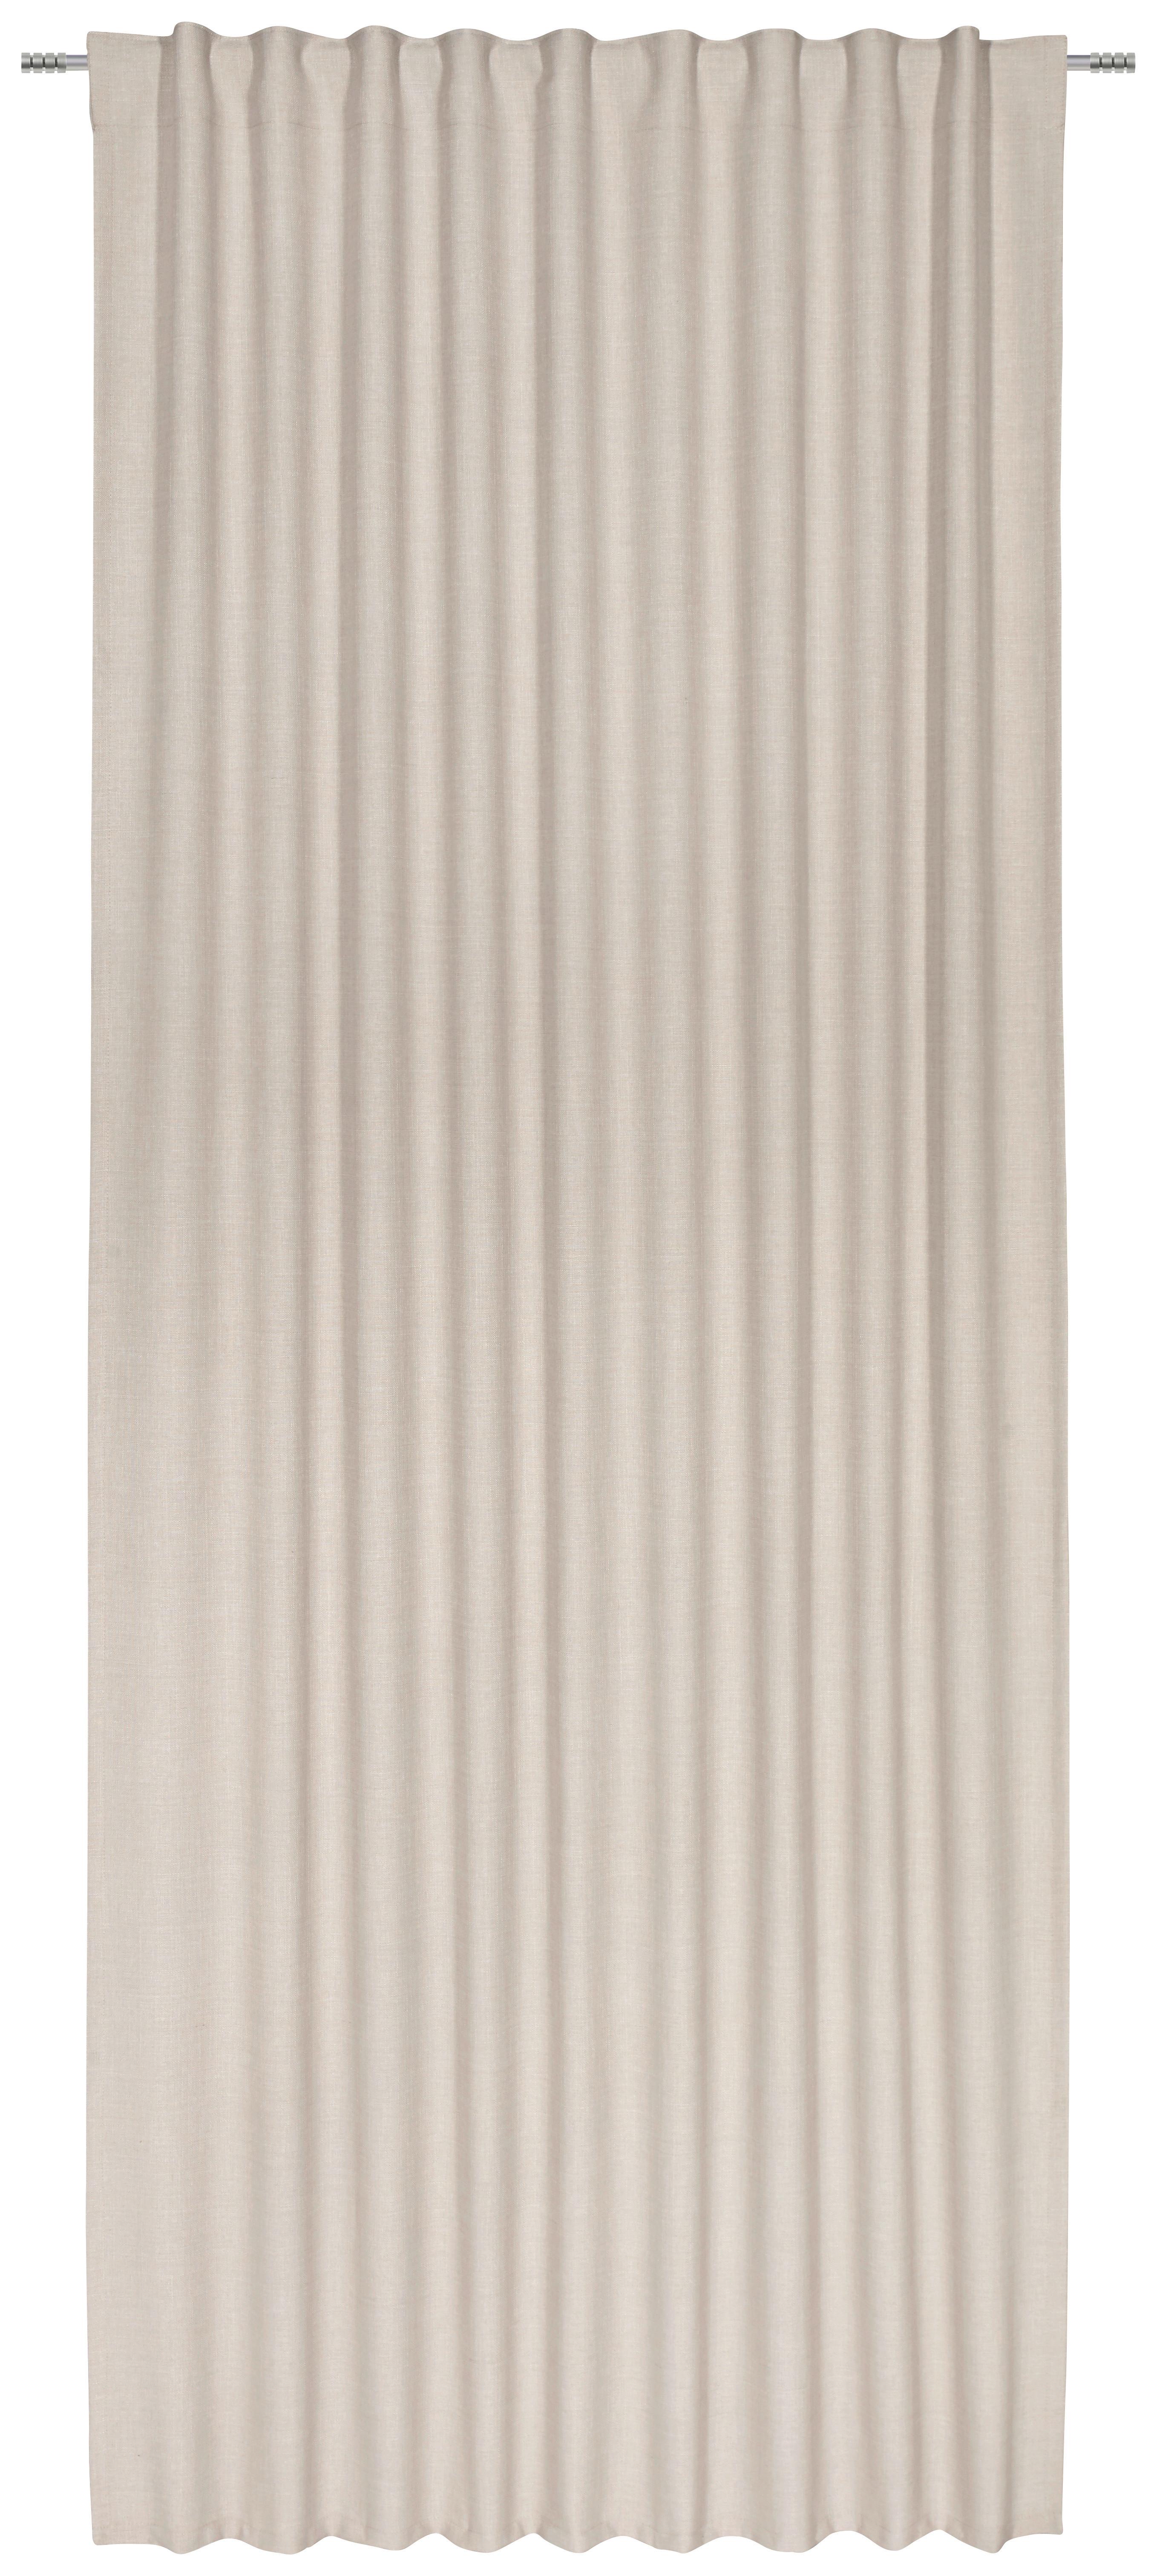 Končana Zavesa Leo -Akt- - peščene barve, tekstil (135/255cm) - Premium Living